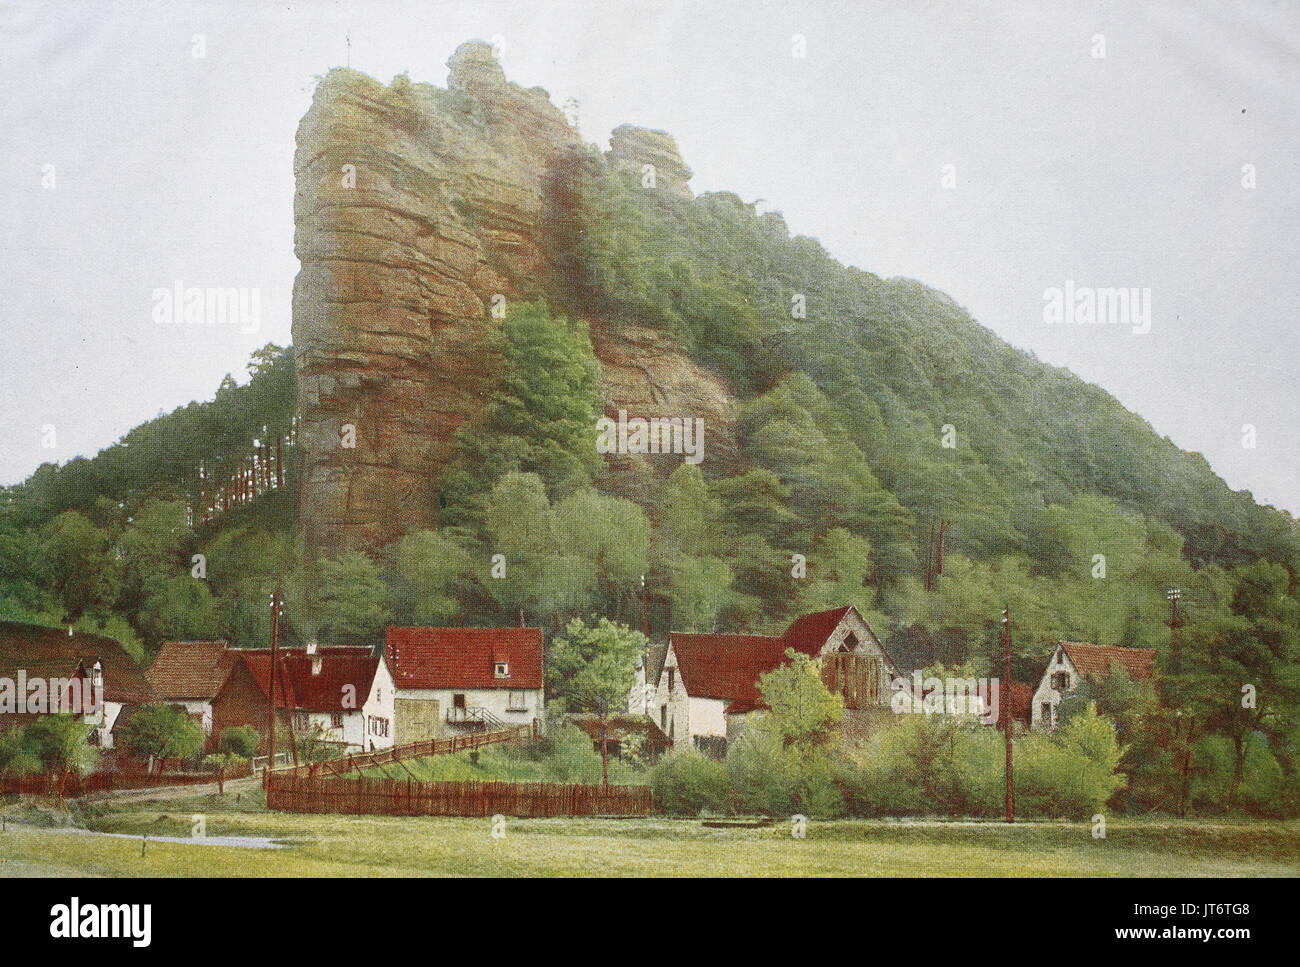 La roccia Jungfernsprung vicino Dahn, Germania, digitale migliorata la riproduzione di un immagine pubblicata tra 1880 - 1885 Foto Stock